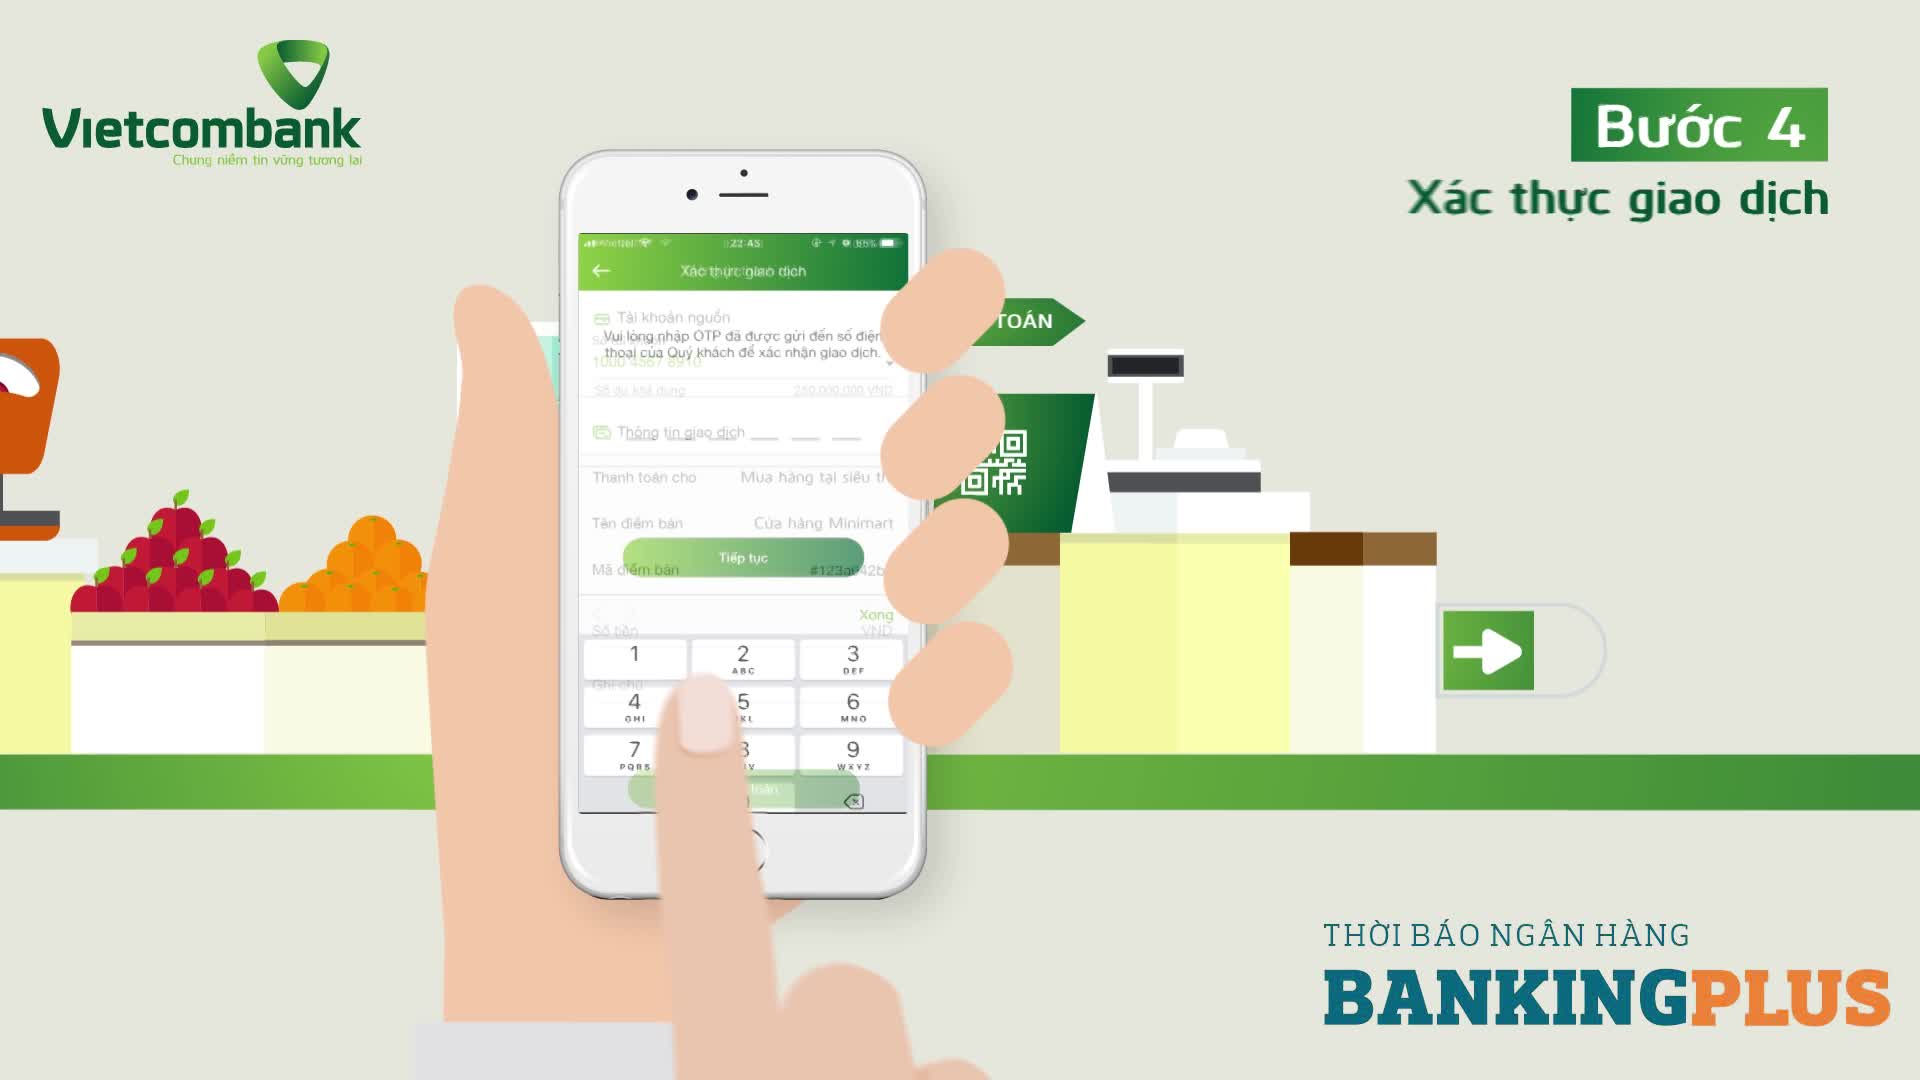 Hướng dẫn sử dụng dịch vụ QR Pay thông qua ứng dụng VCB-Mobile B@nking